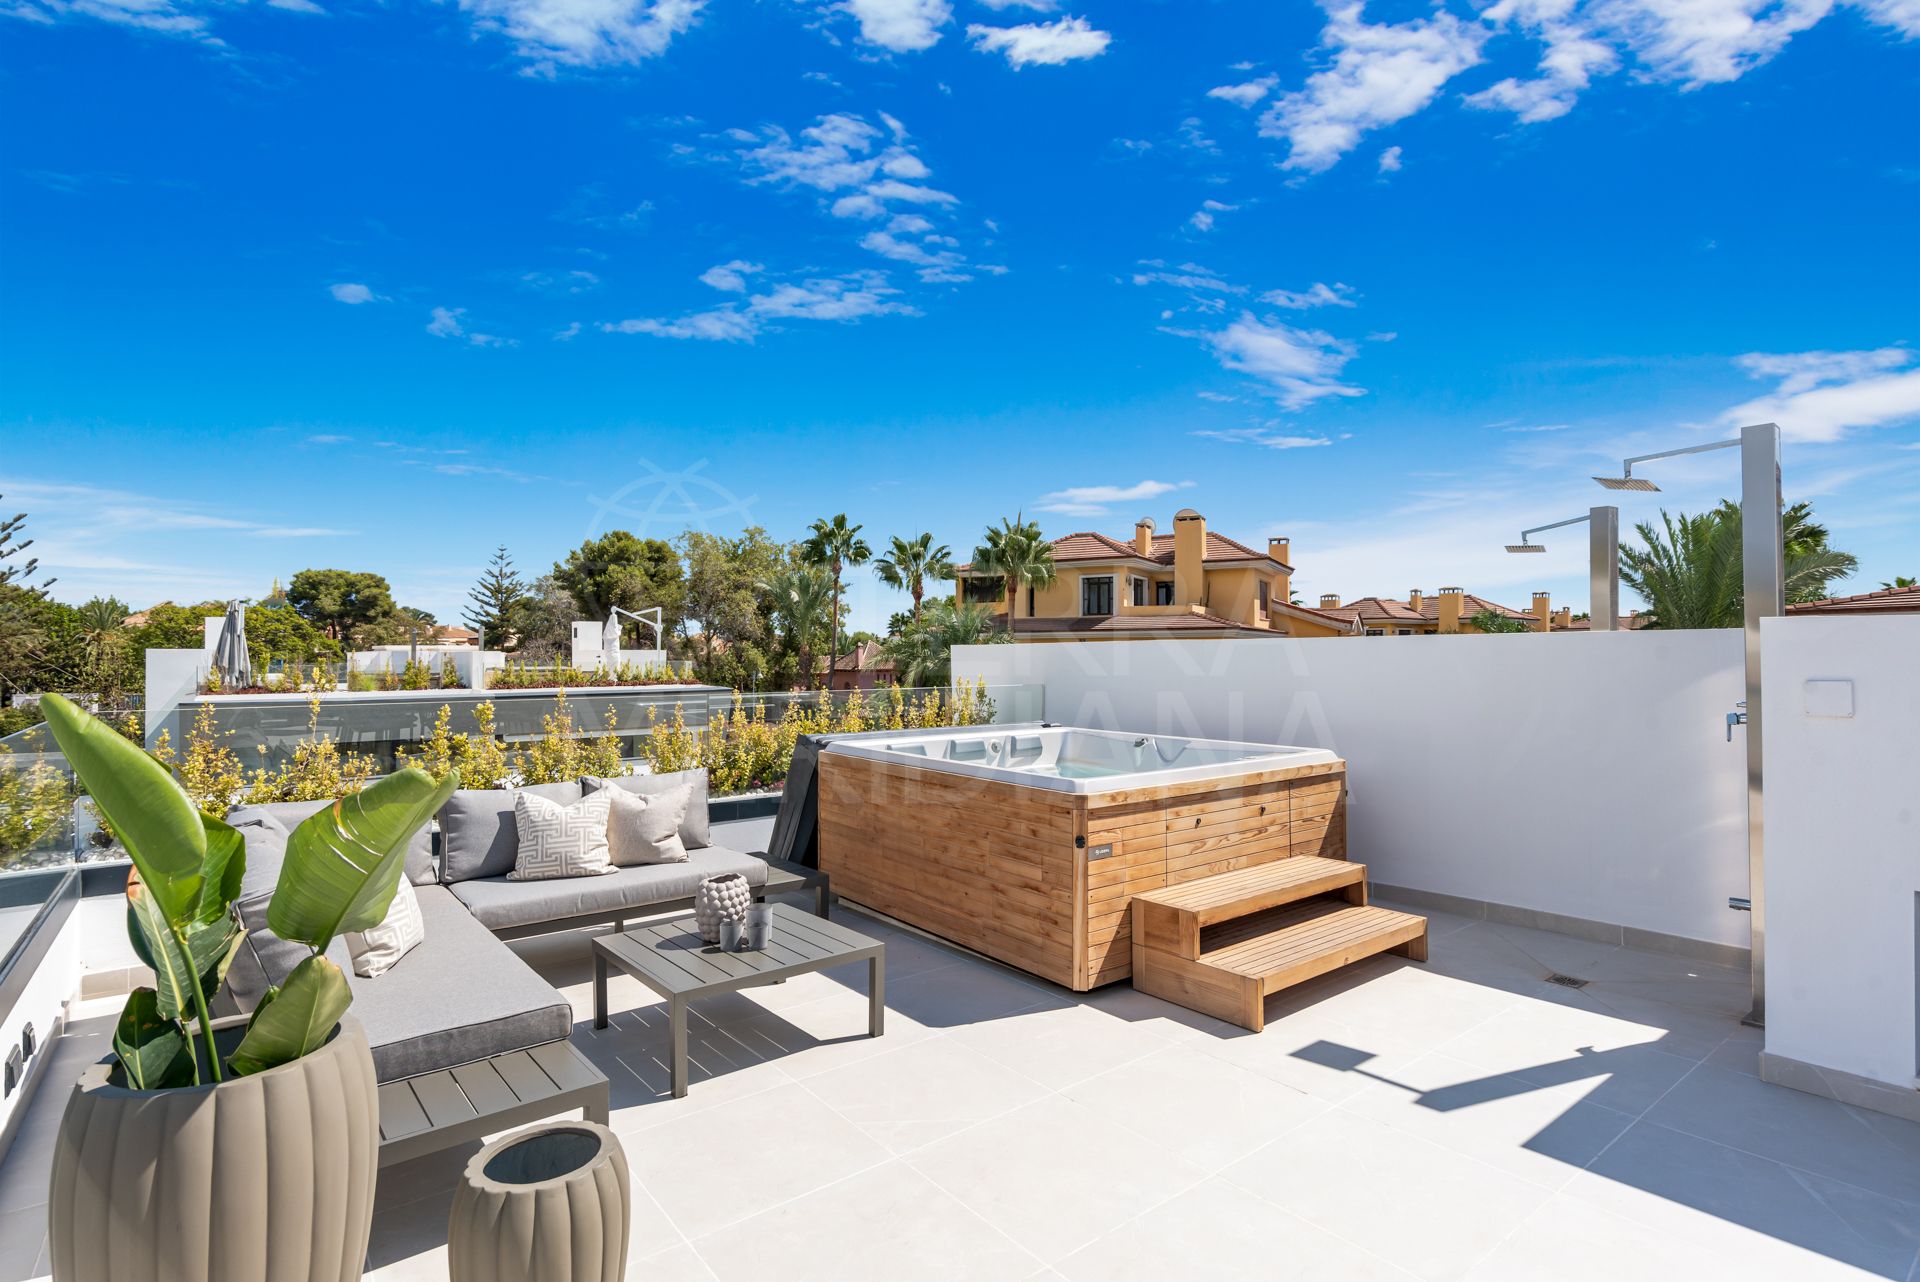 Villa adosada de lujo en venta en Banus Bay Residences, Marbella